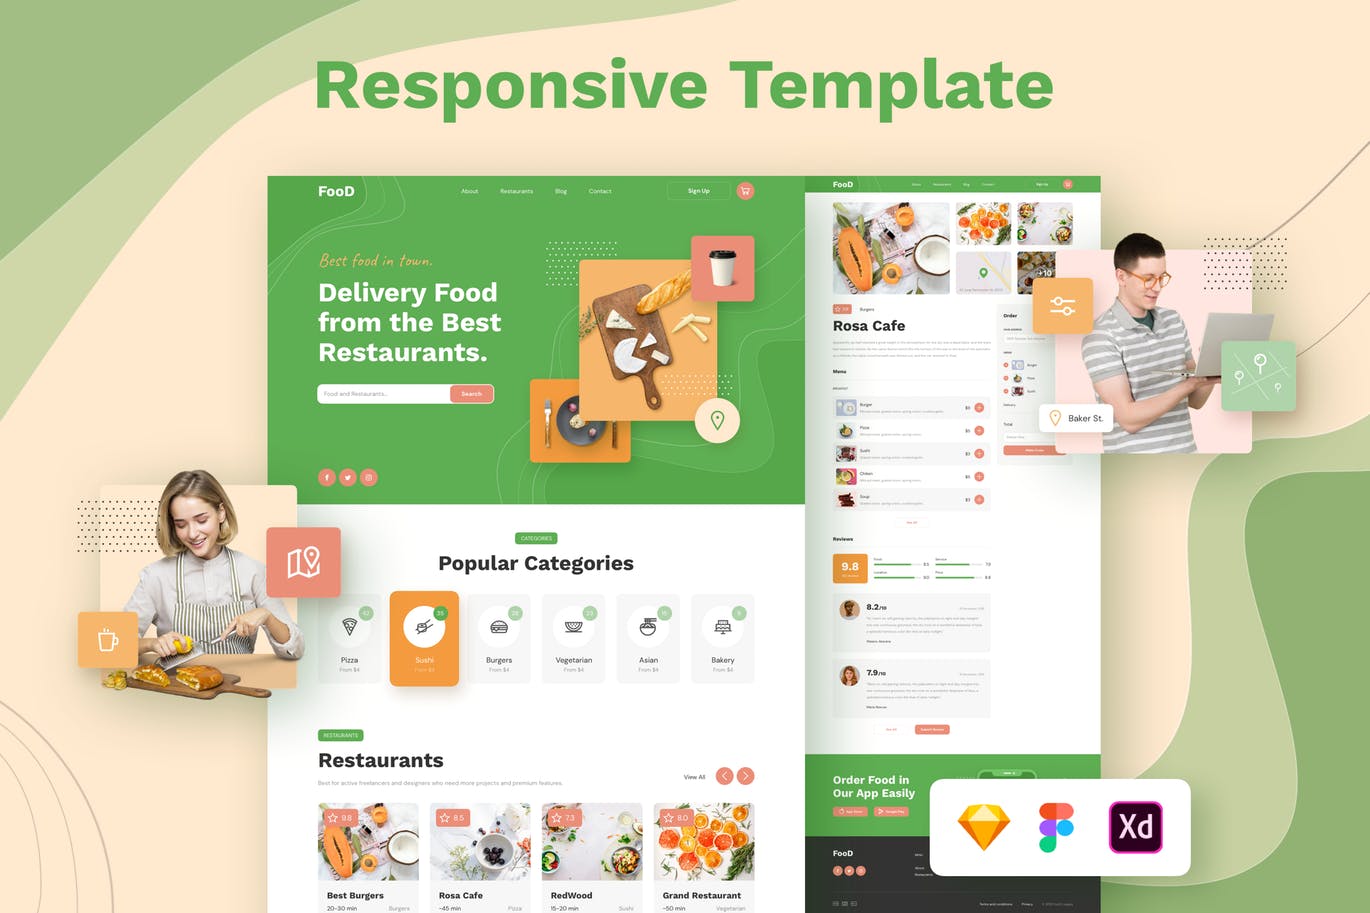 在线订餐/餐厅响应式网站设计第一素材精选模板 Food Delivery Restaurant Responsive Template插图